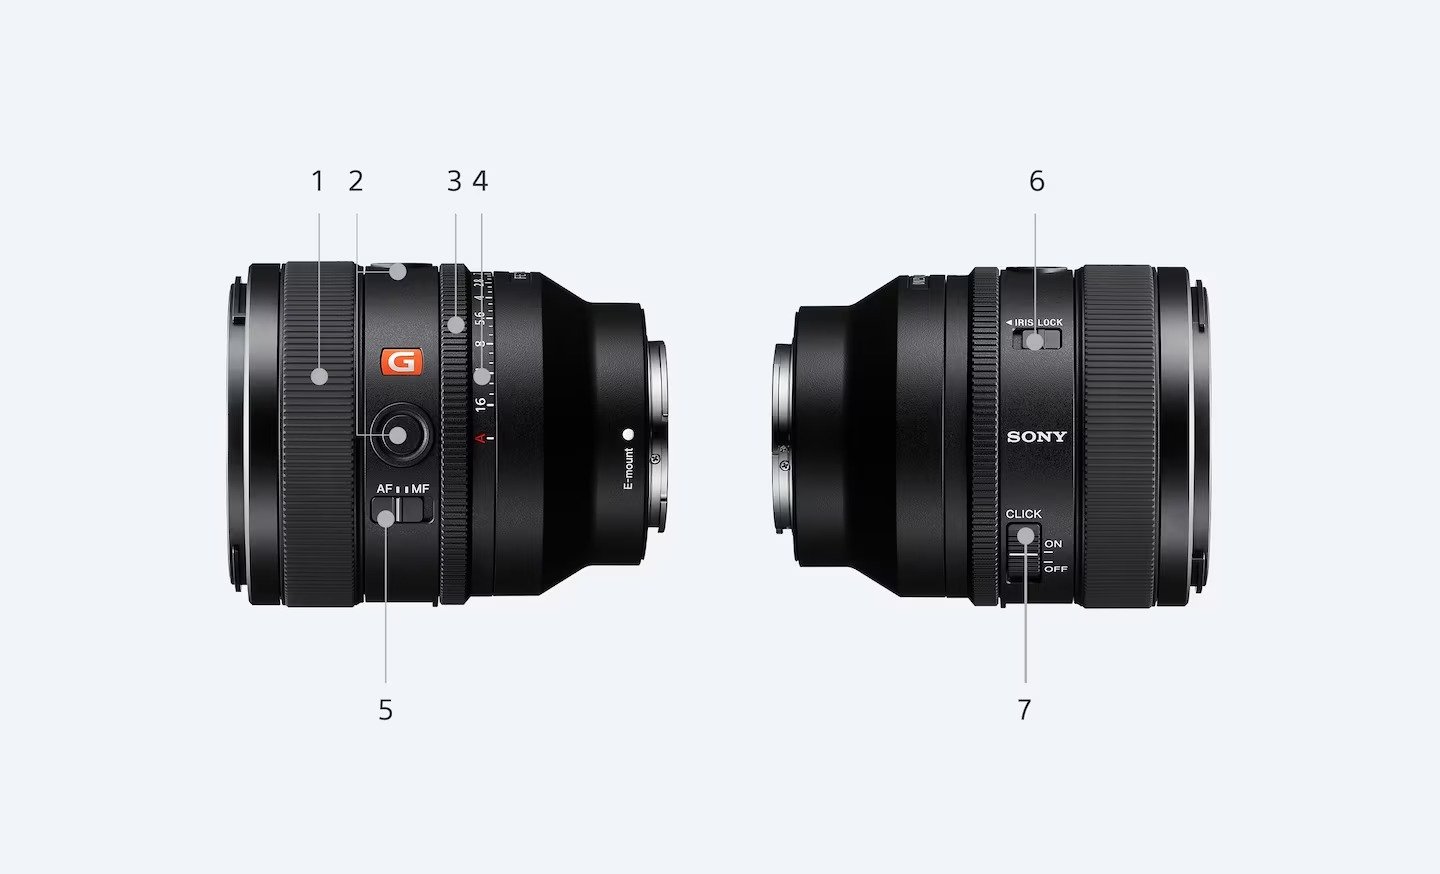 Sony FE 50mm f1.4 GM Lens Detail